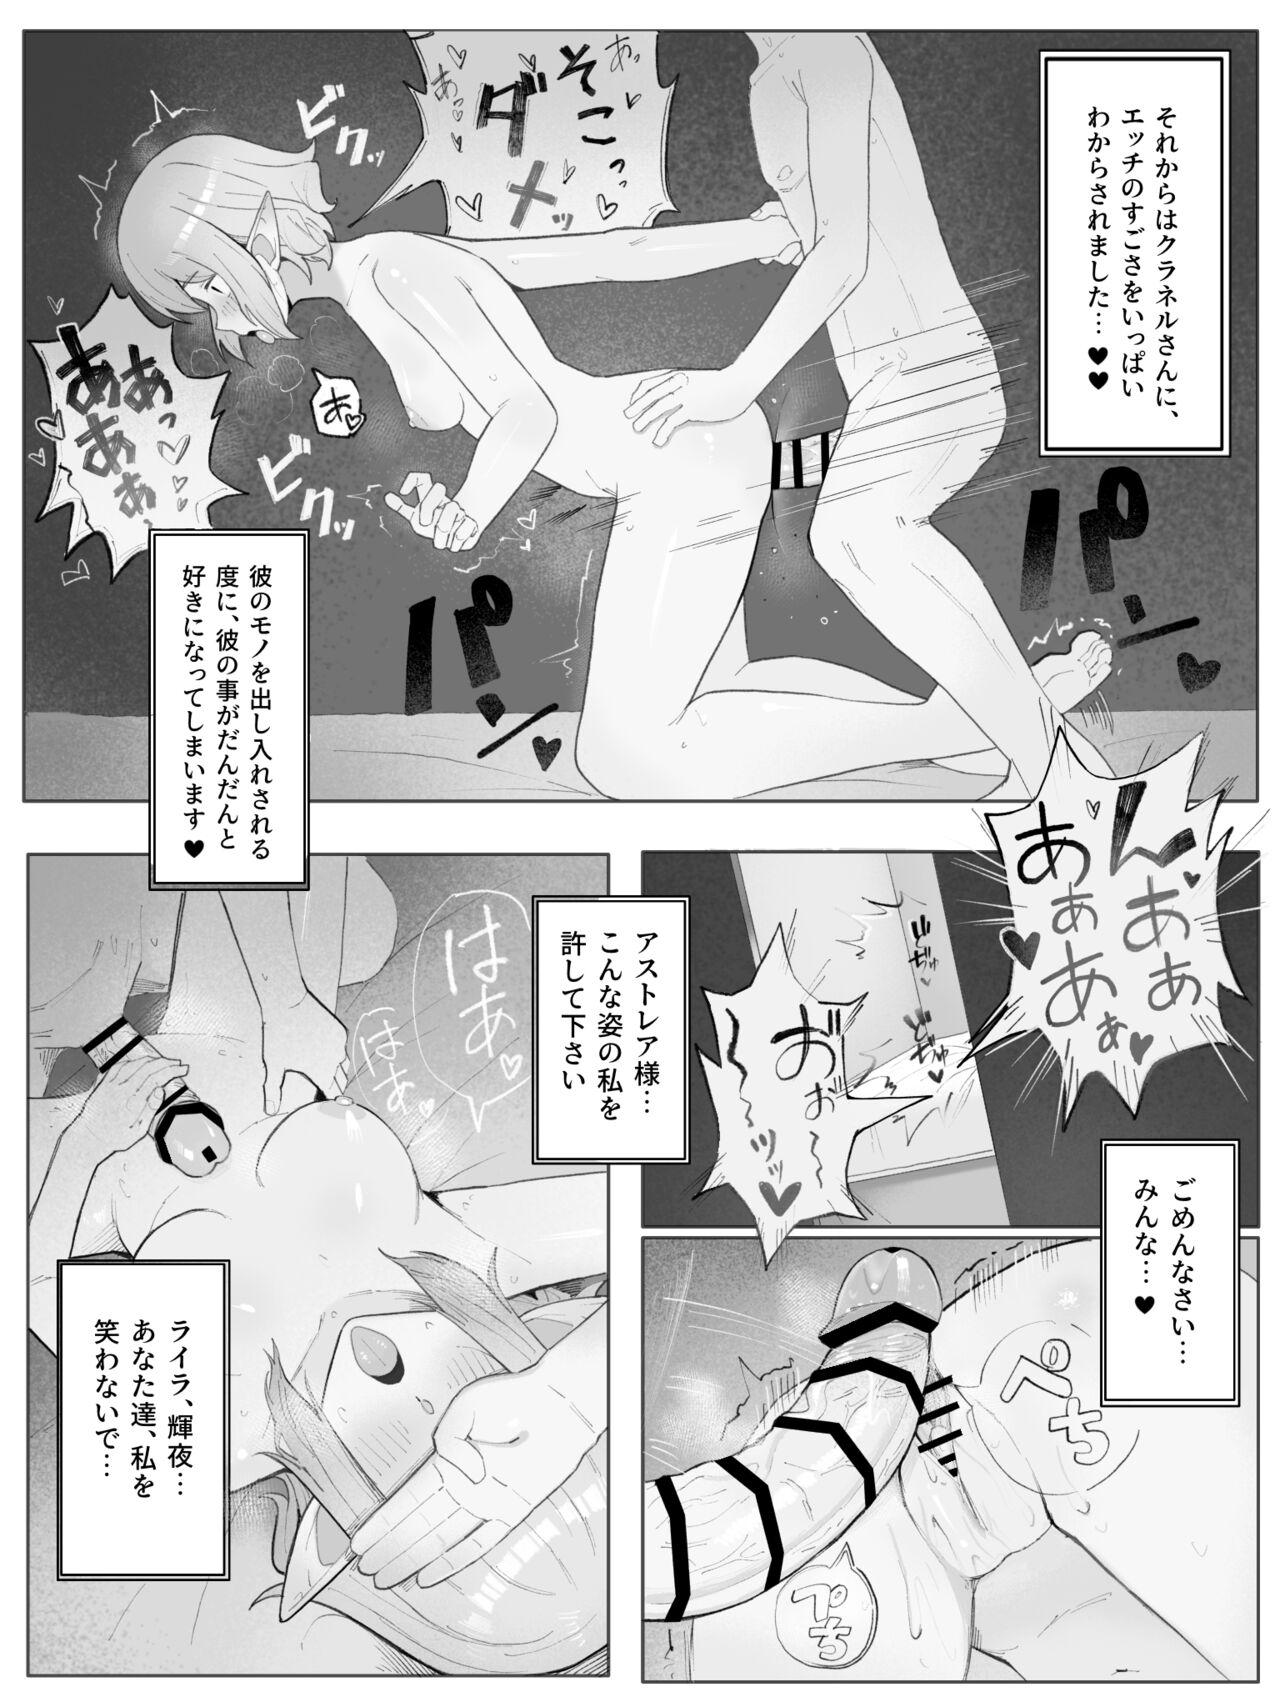 Bhabhi Bell Ryuu Ecchi na Manga - Dungeon ni deai o motomeru no wa machigatteiru darou ka Thick - Page 11